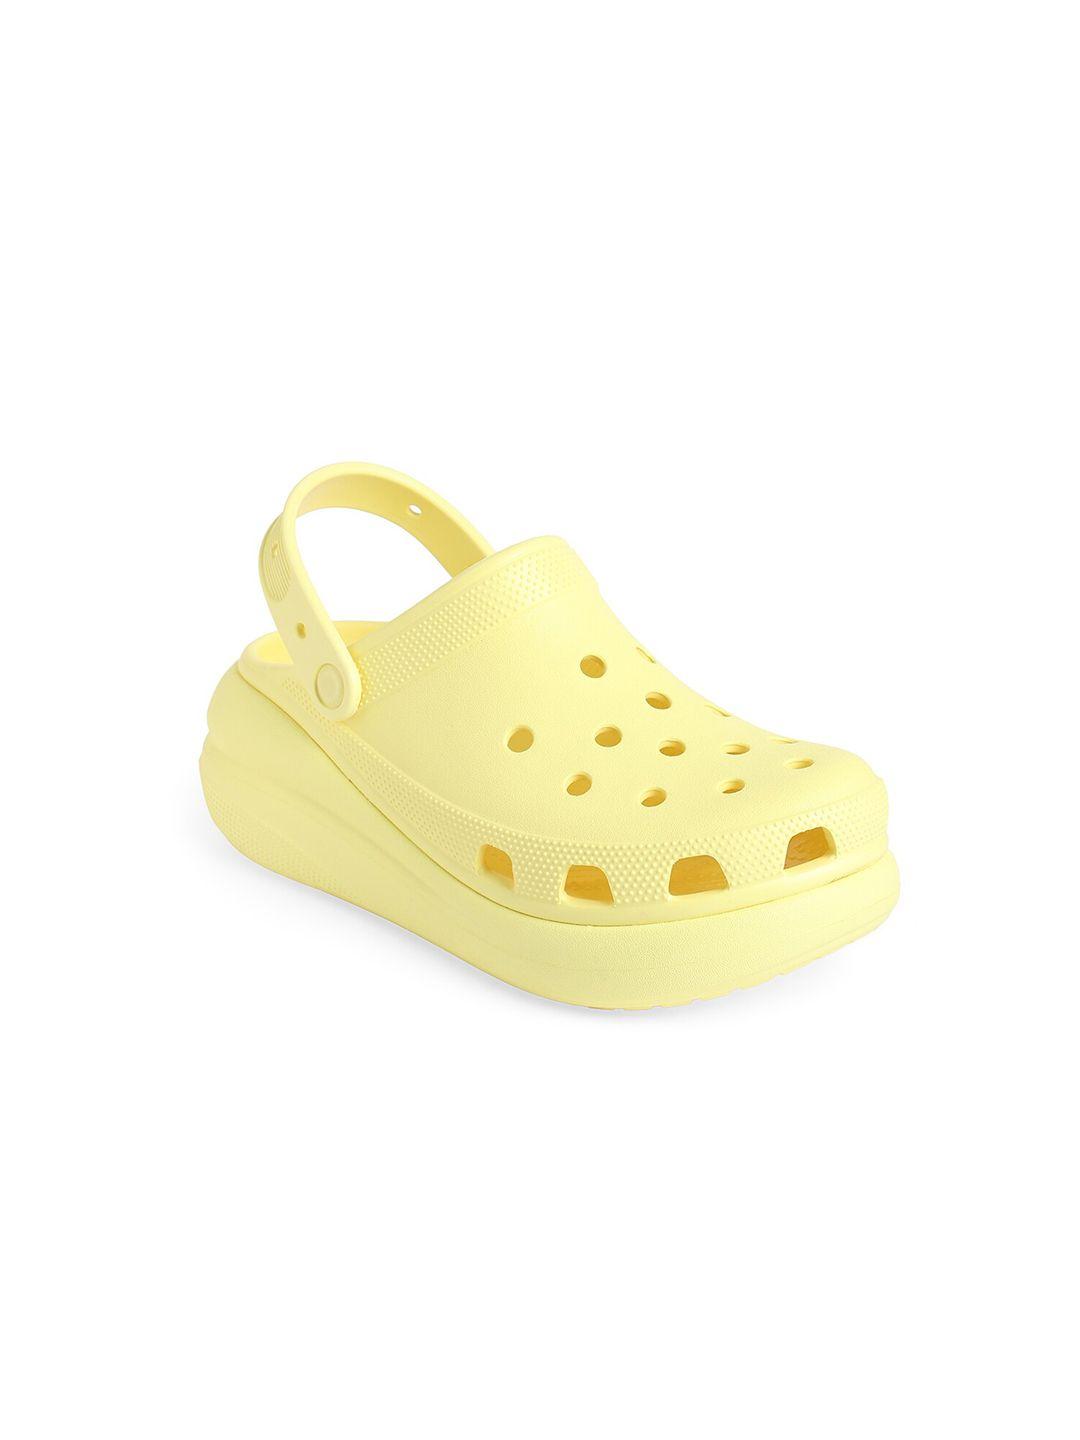 crocs unisex yellow croslite clogs